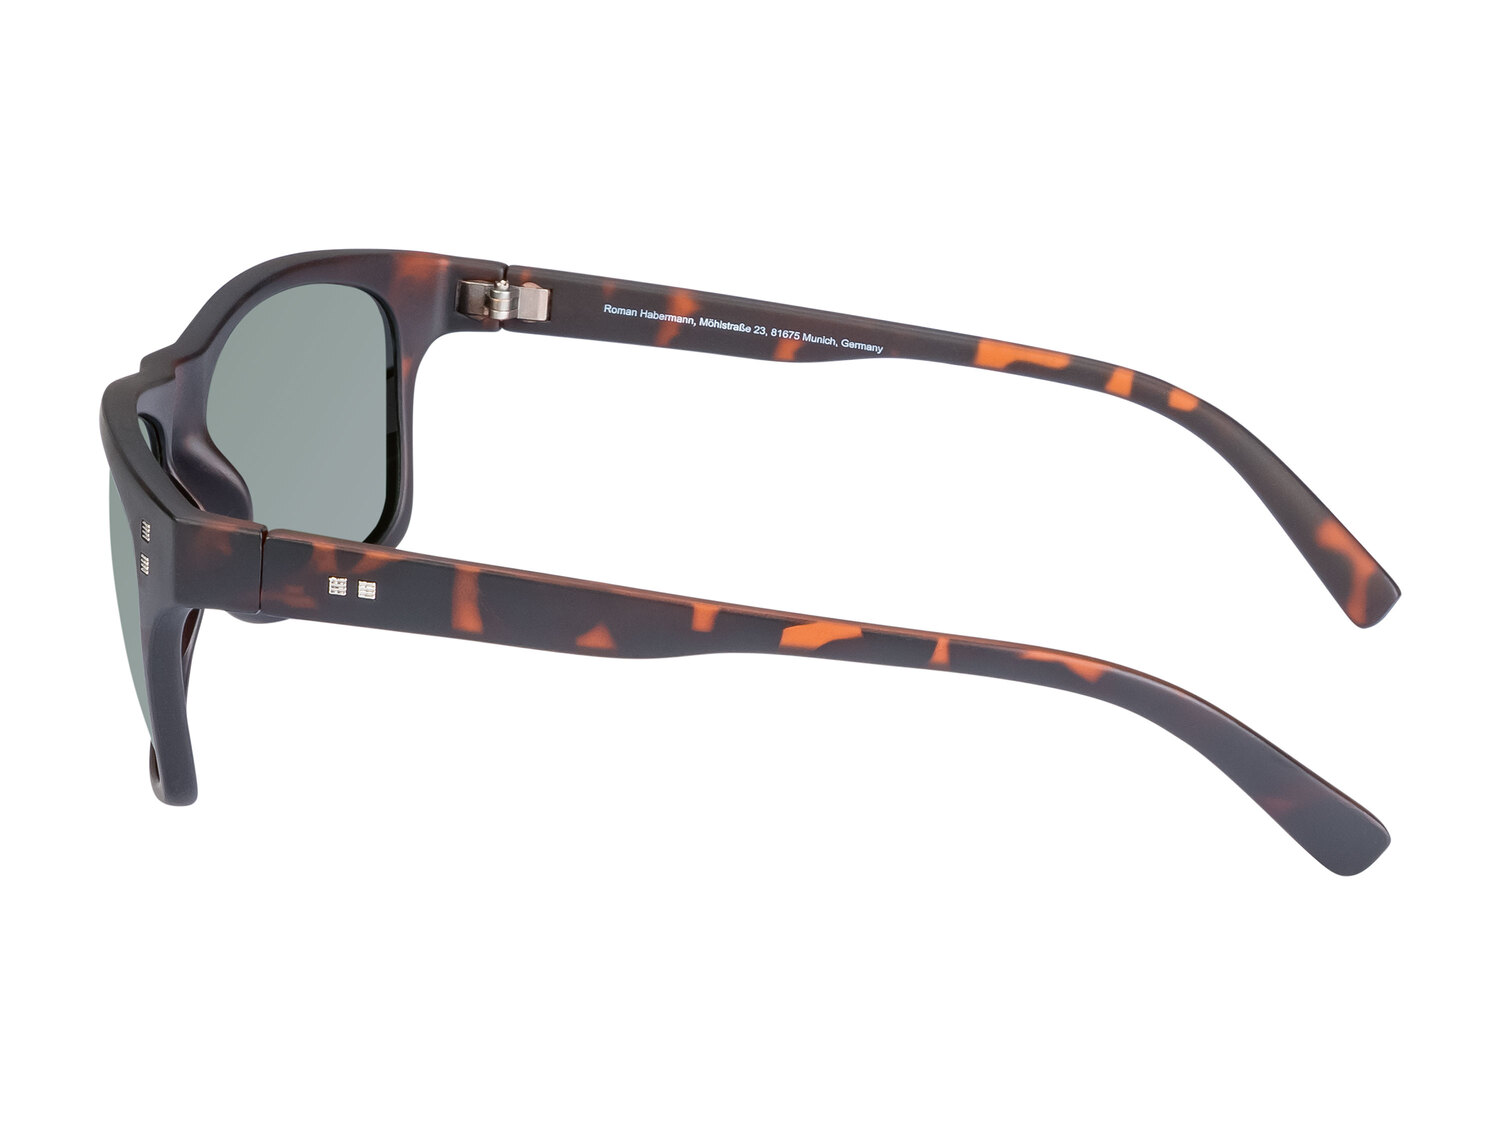 Okulary przeciwsłoneczne damskie , cena 14,99 PLN  
-  100% ochrona UV
Opis